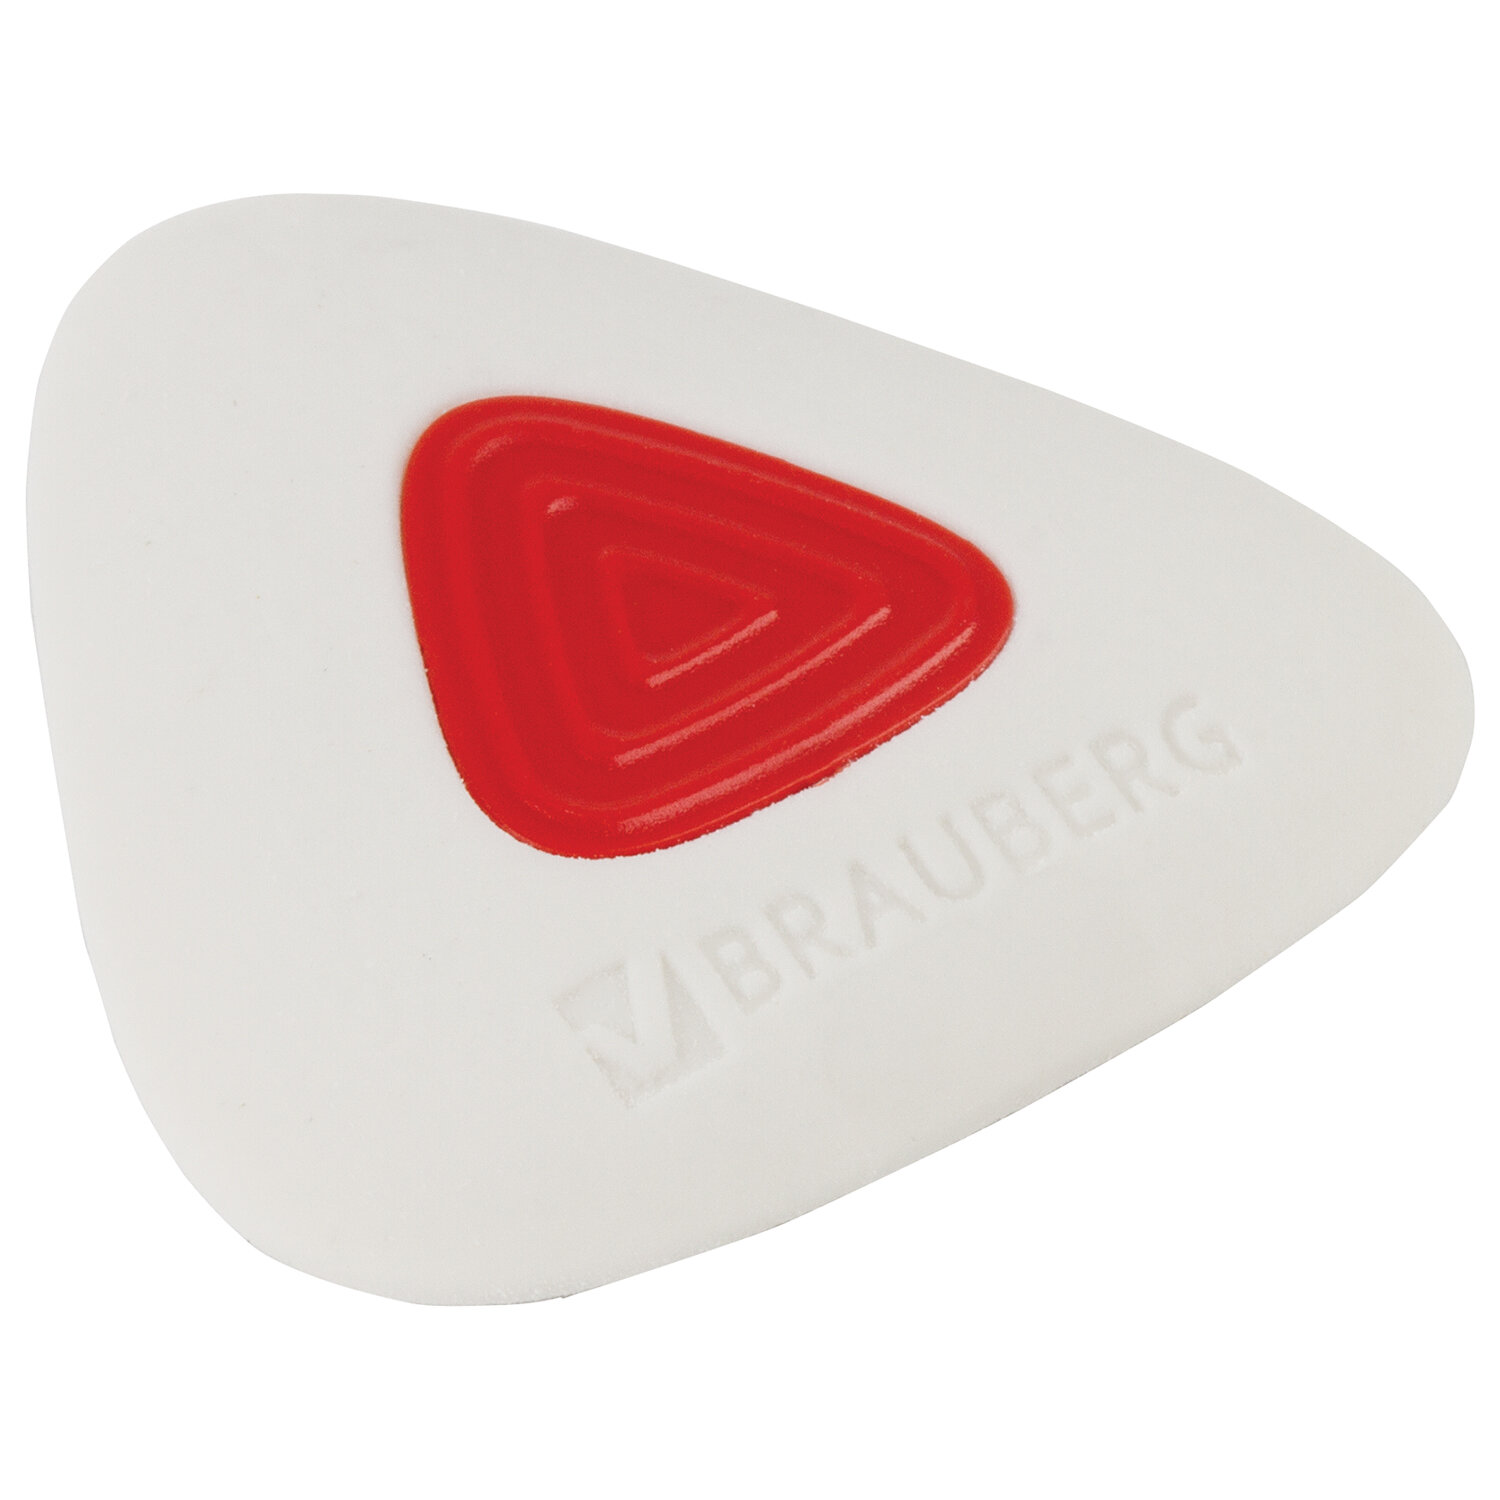 Ластик BRAUBERG "Trios PRO", 36х36х9 мм, белый, треугольный, красный пластиковый держатель, 229559 